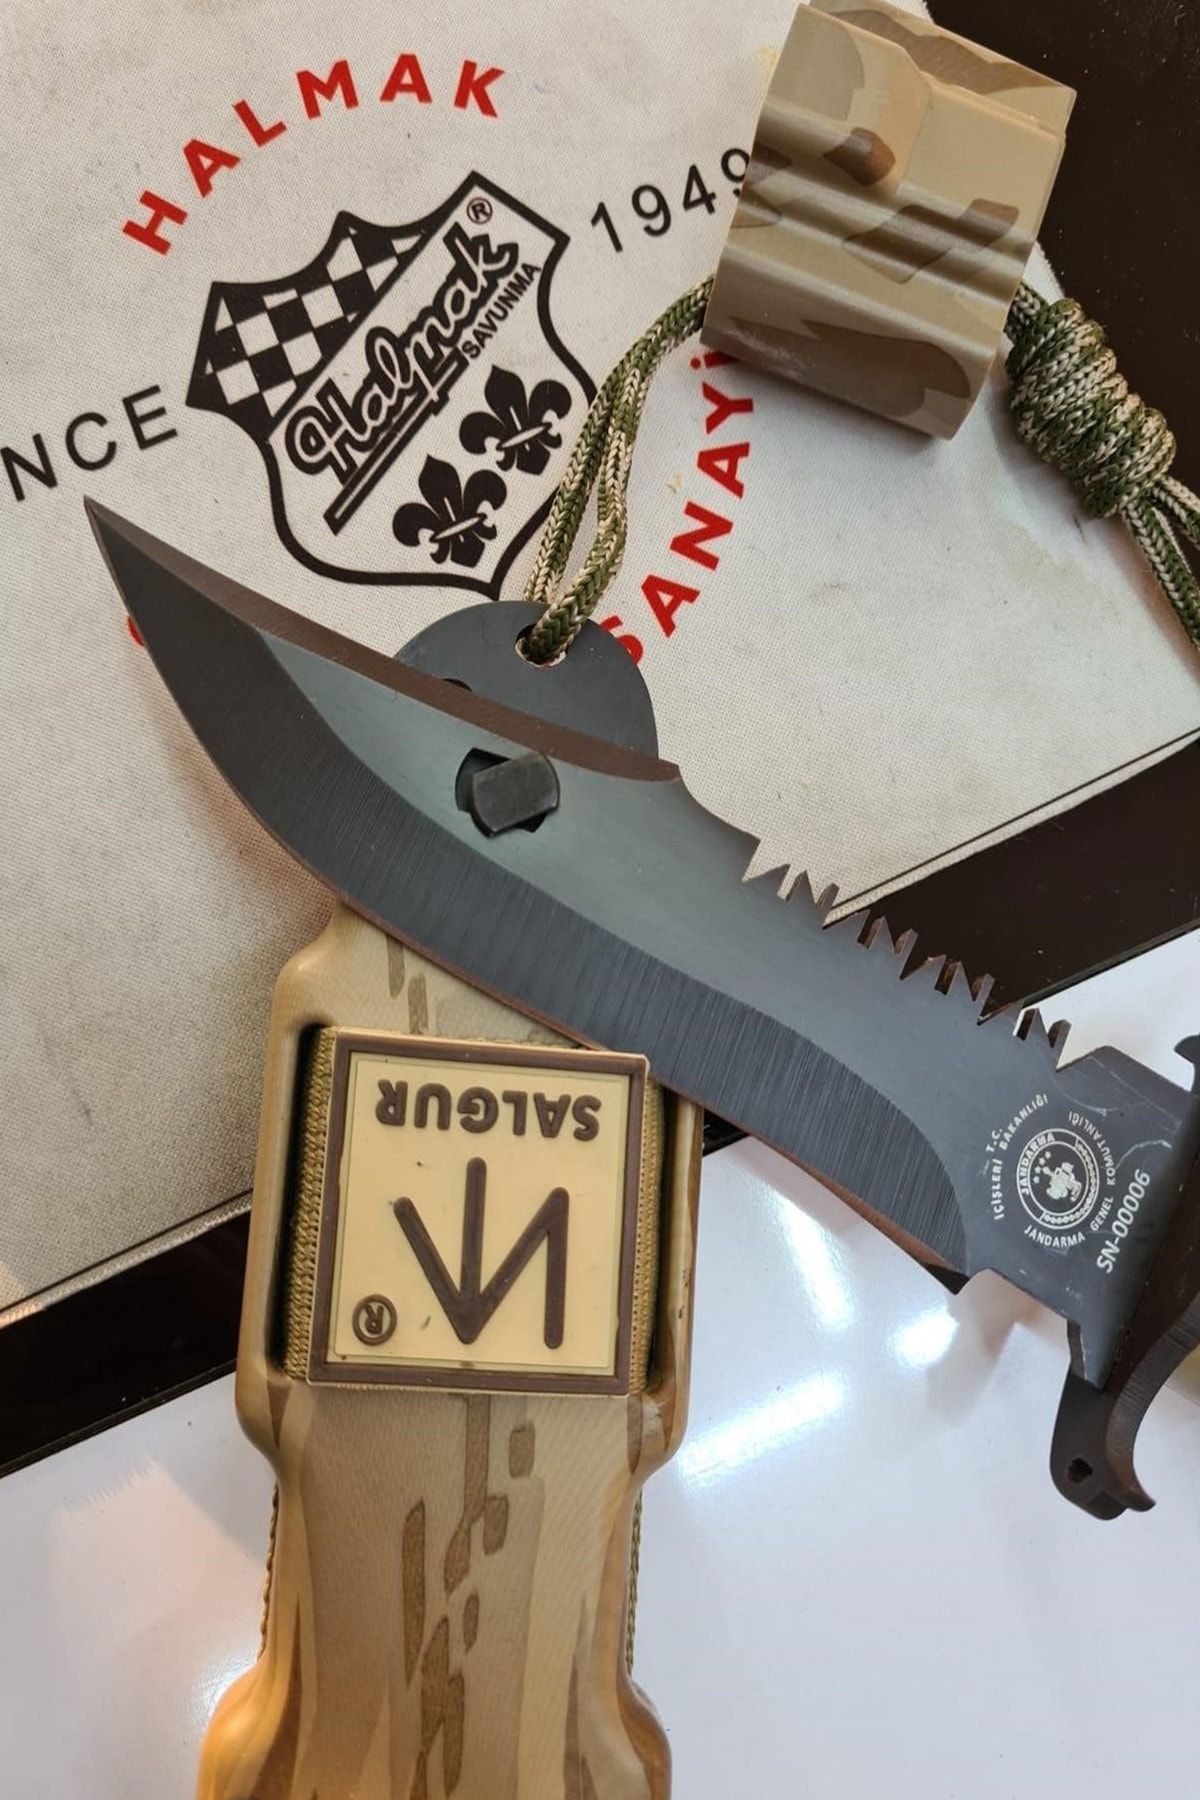 Halmak Outdoor Bıçak Mutfak Bıçak Komando Rambo Kamp Av Bıçak Çakı Kılıflı Salgur